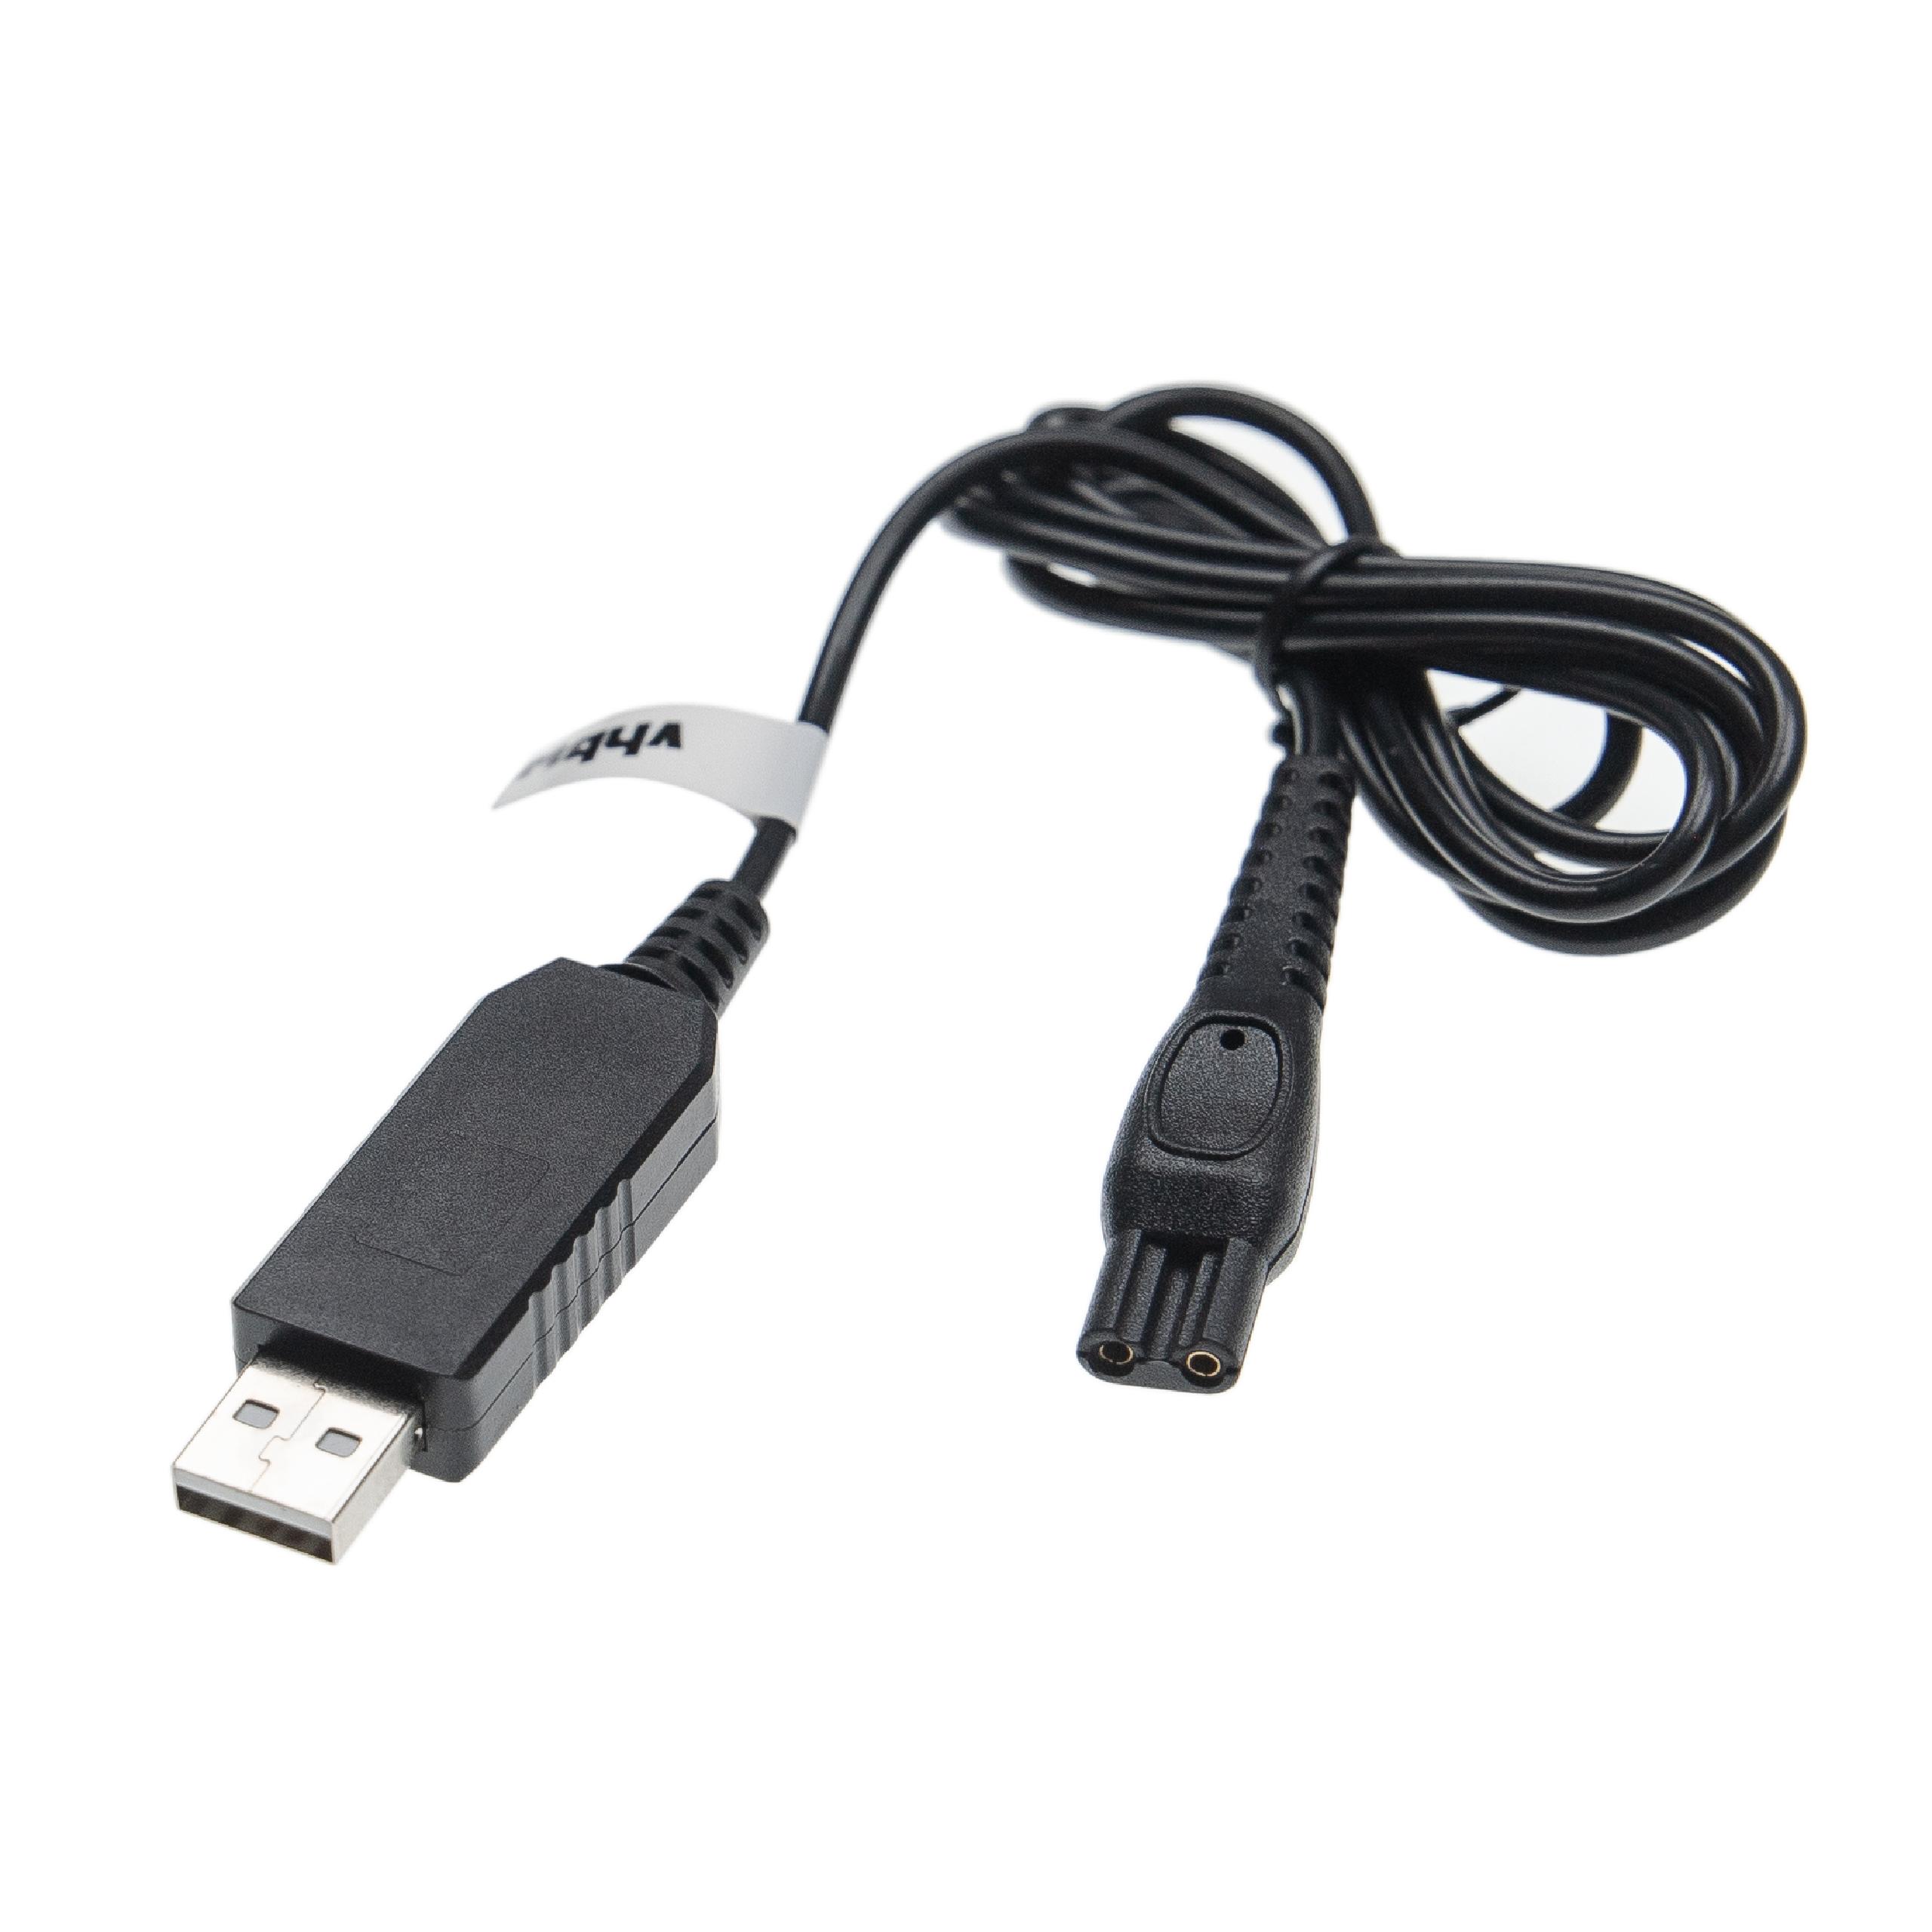 USB Ladekabel passend für Philips HS8020 Rasierer - 100 cm